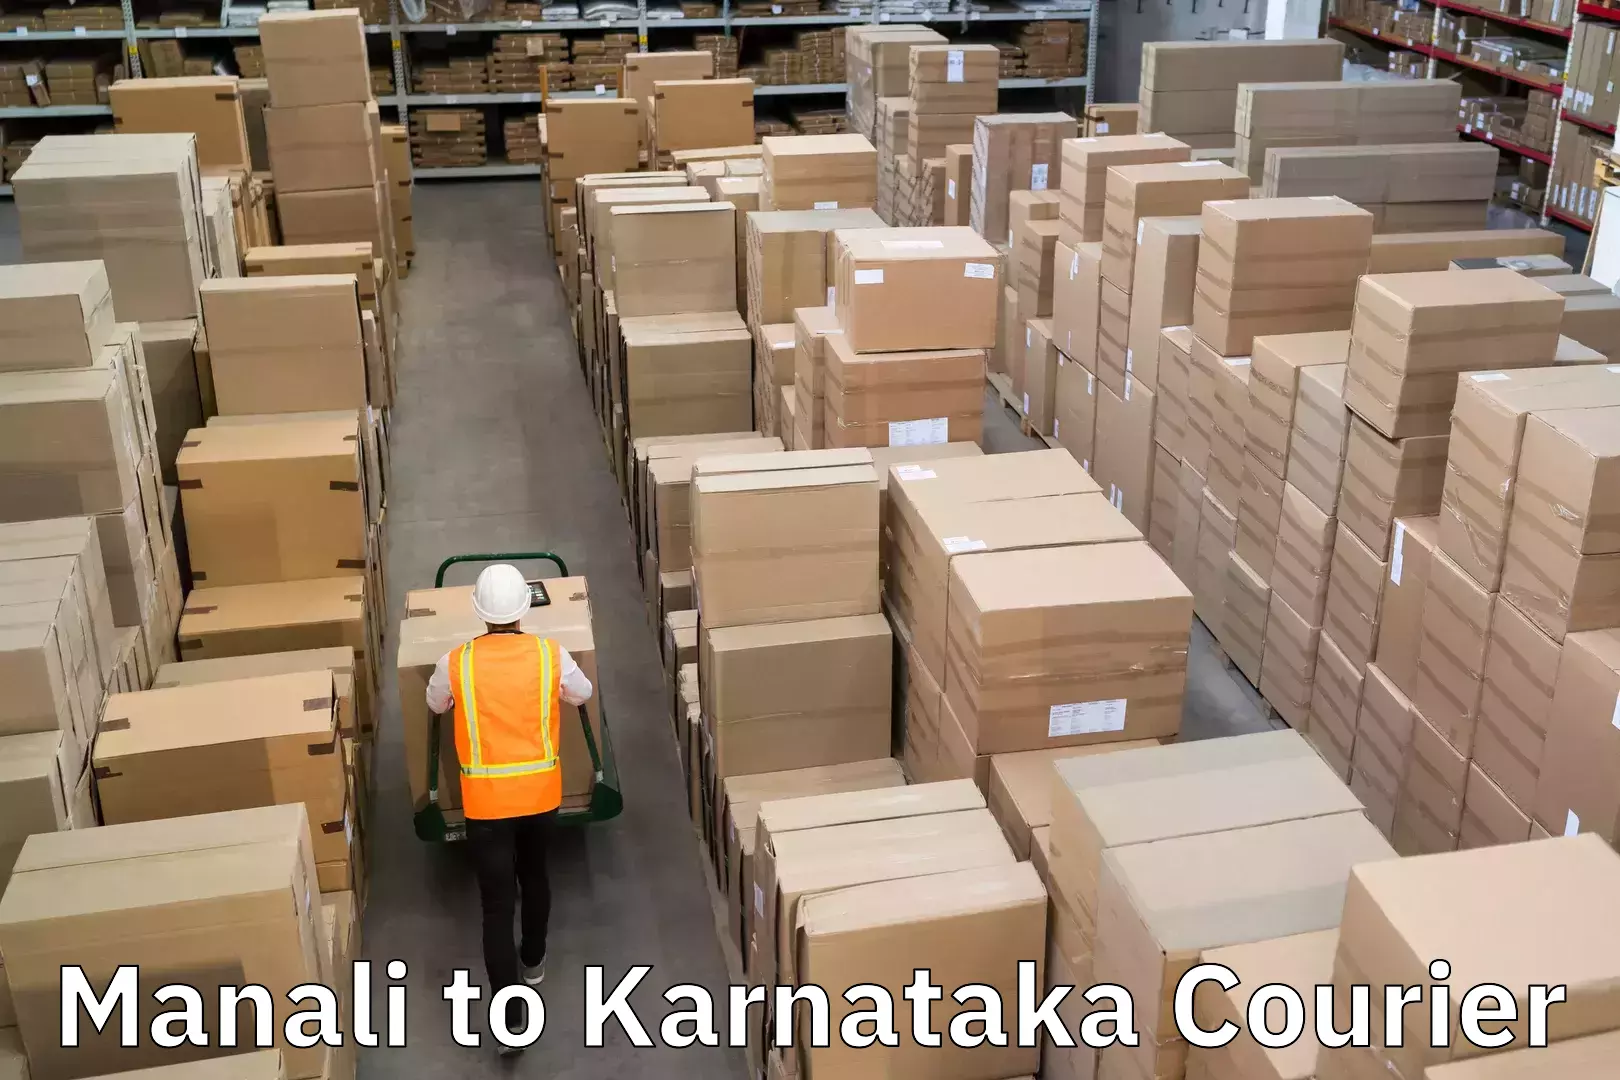 Holiday shipping services Manali to Karnataka